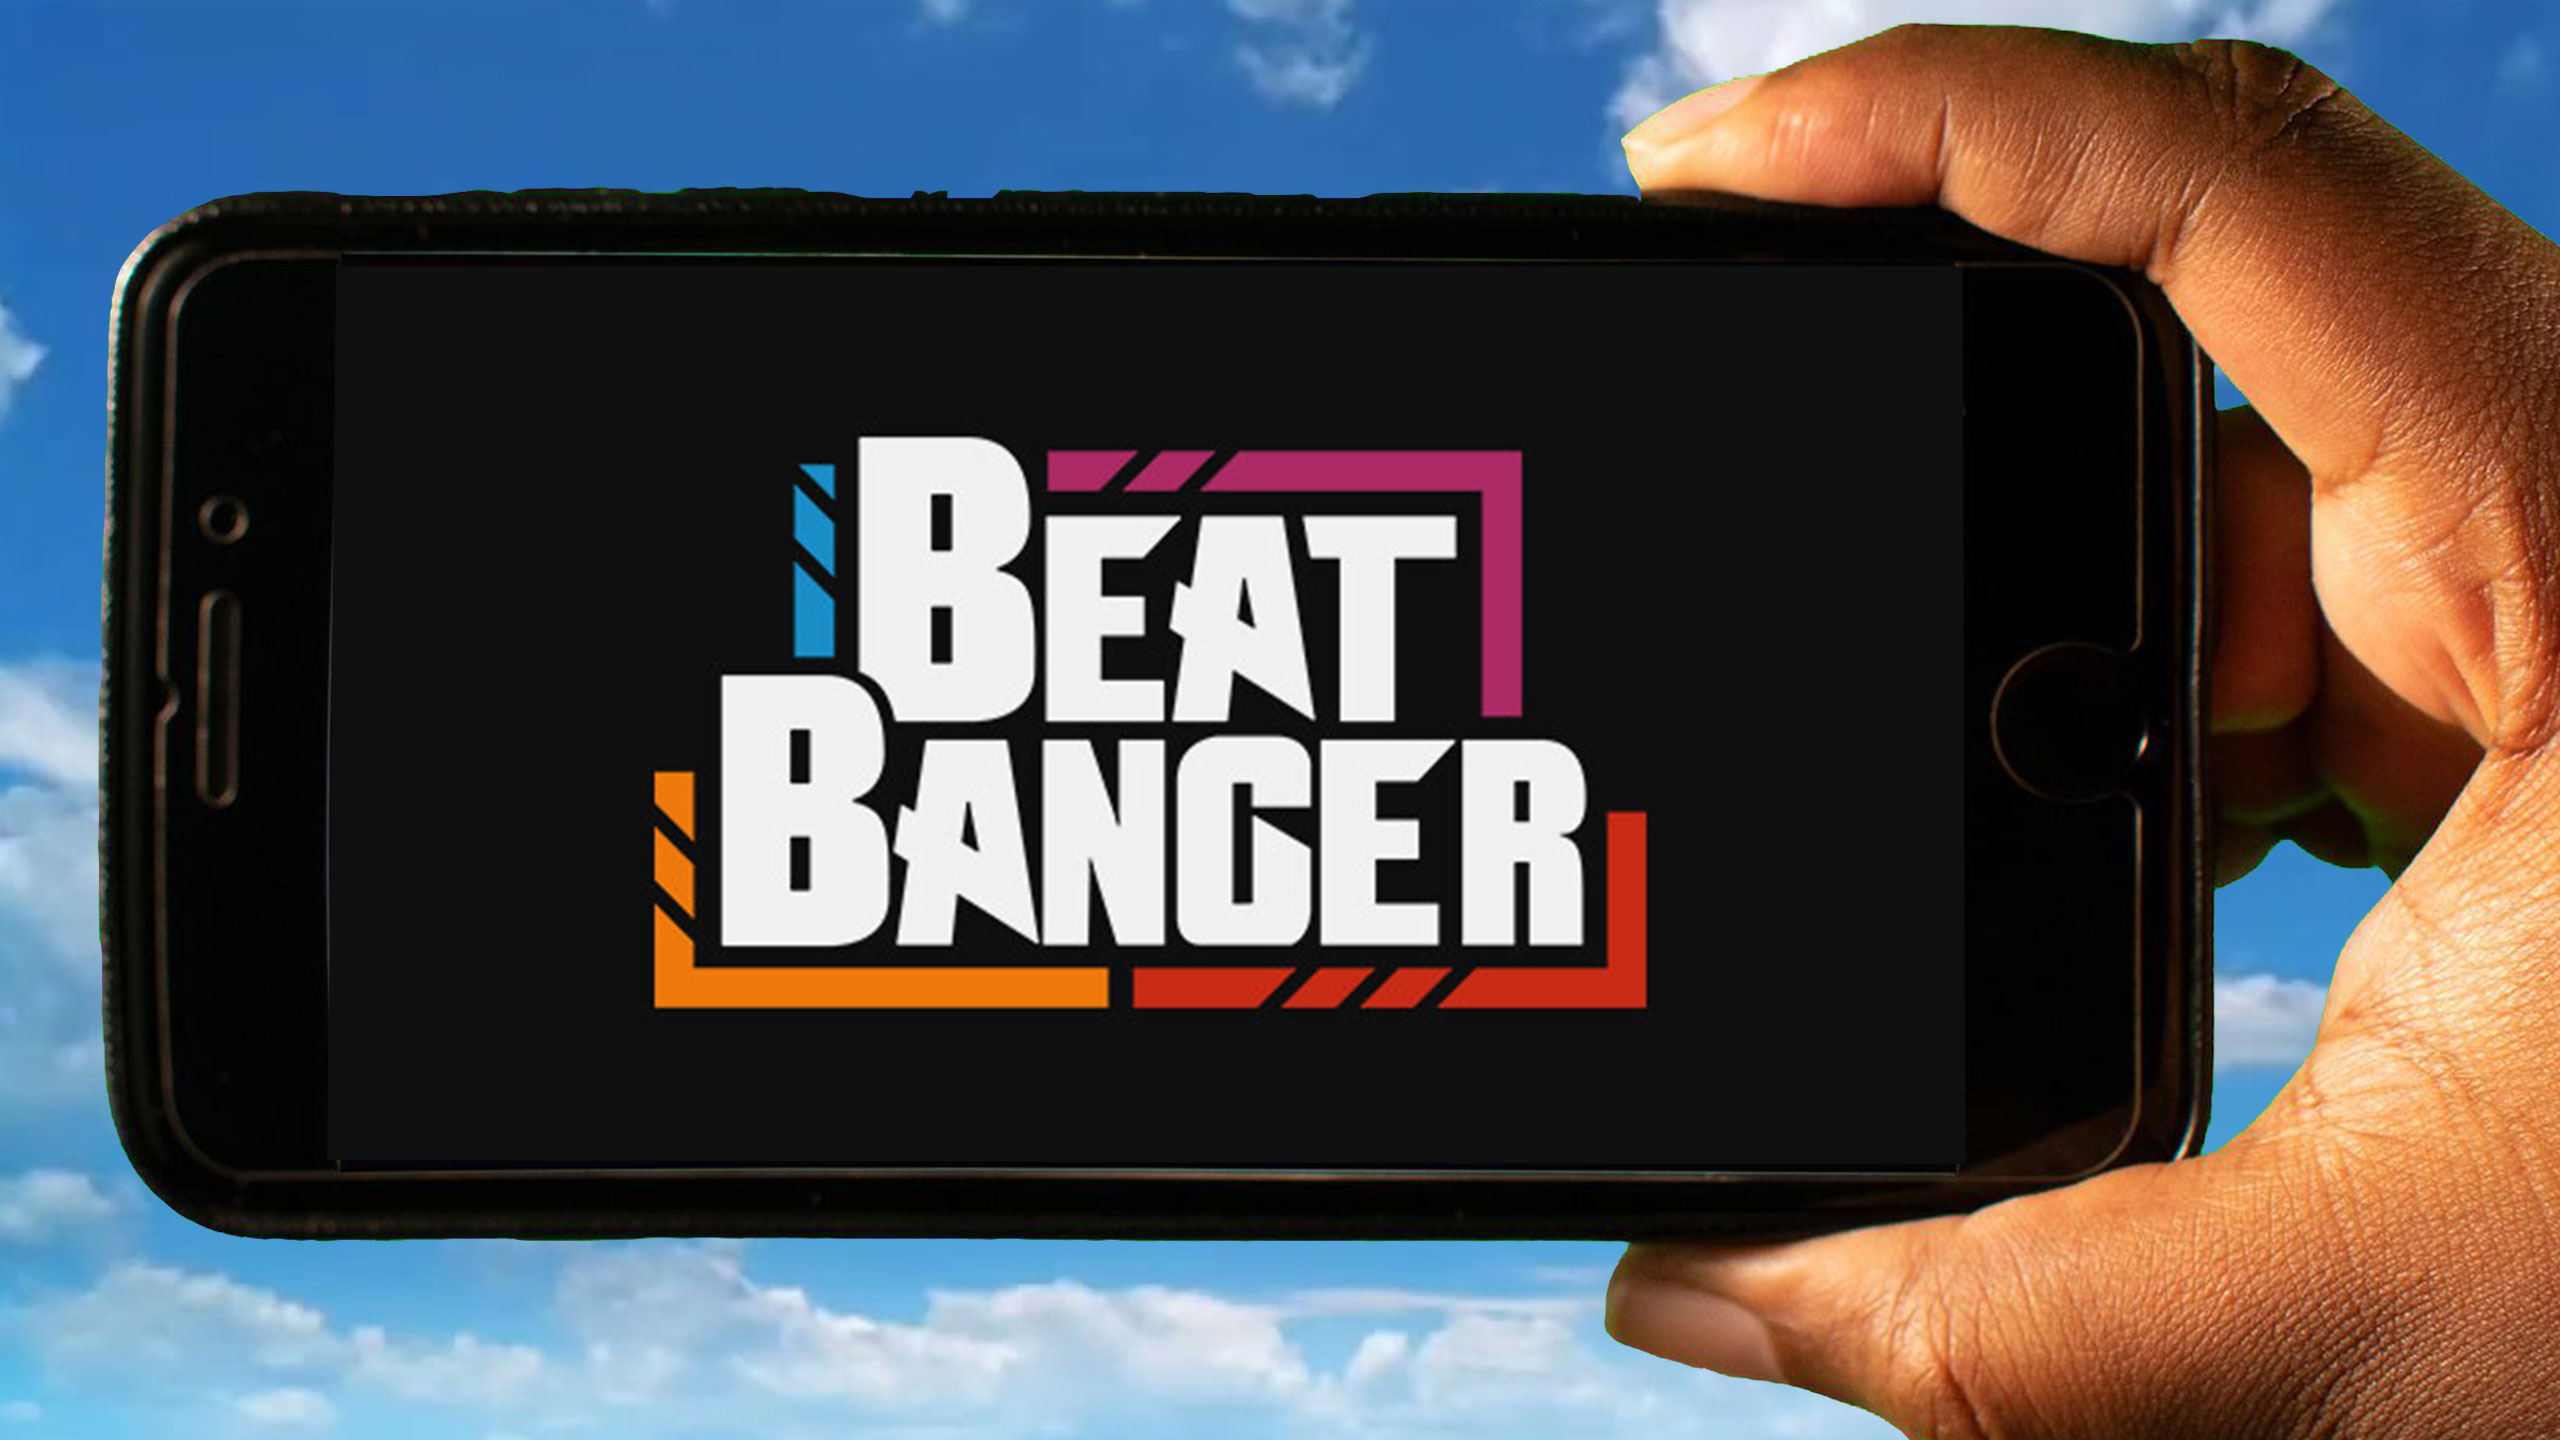 BEAT BANGER PC Version Game Free Download